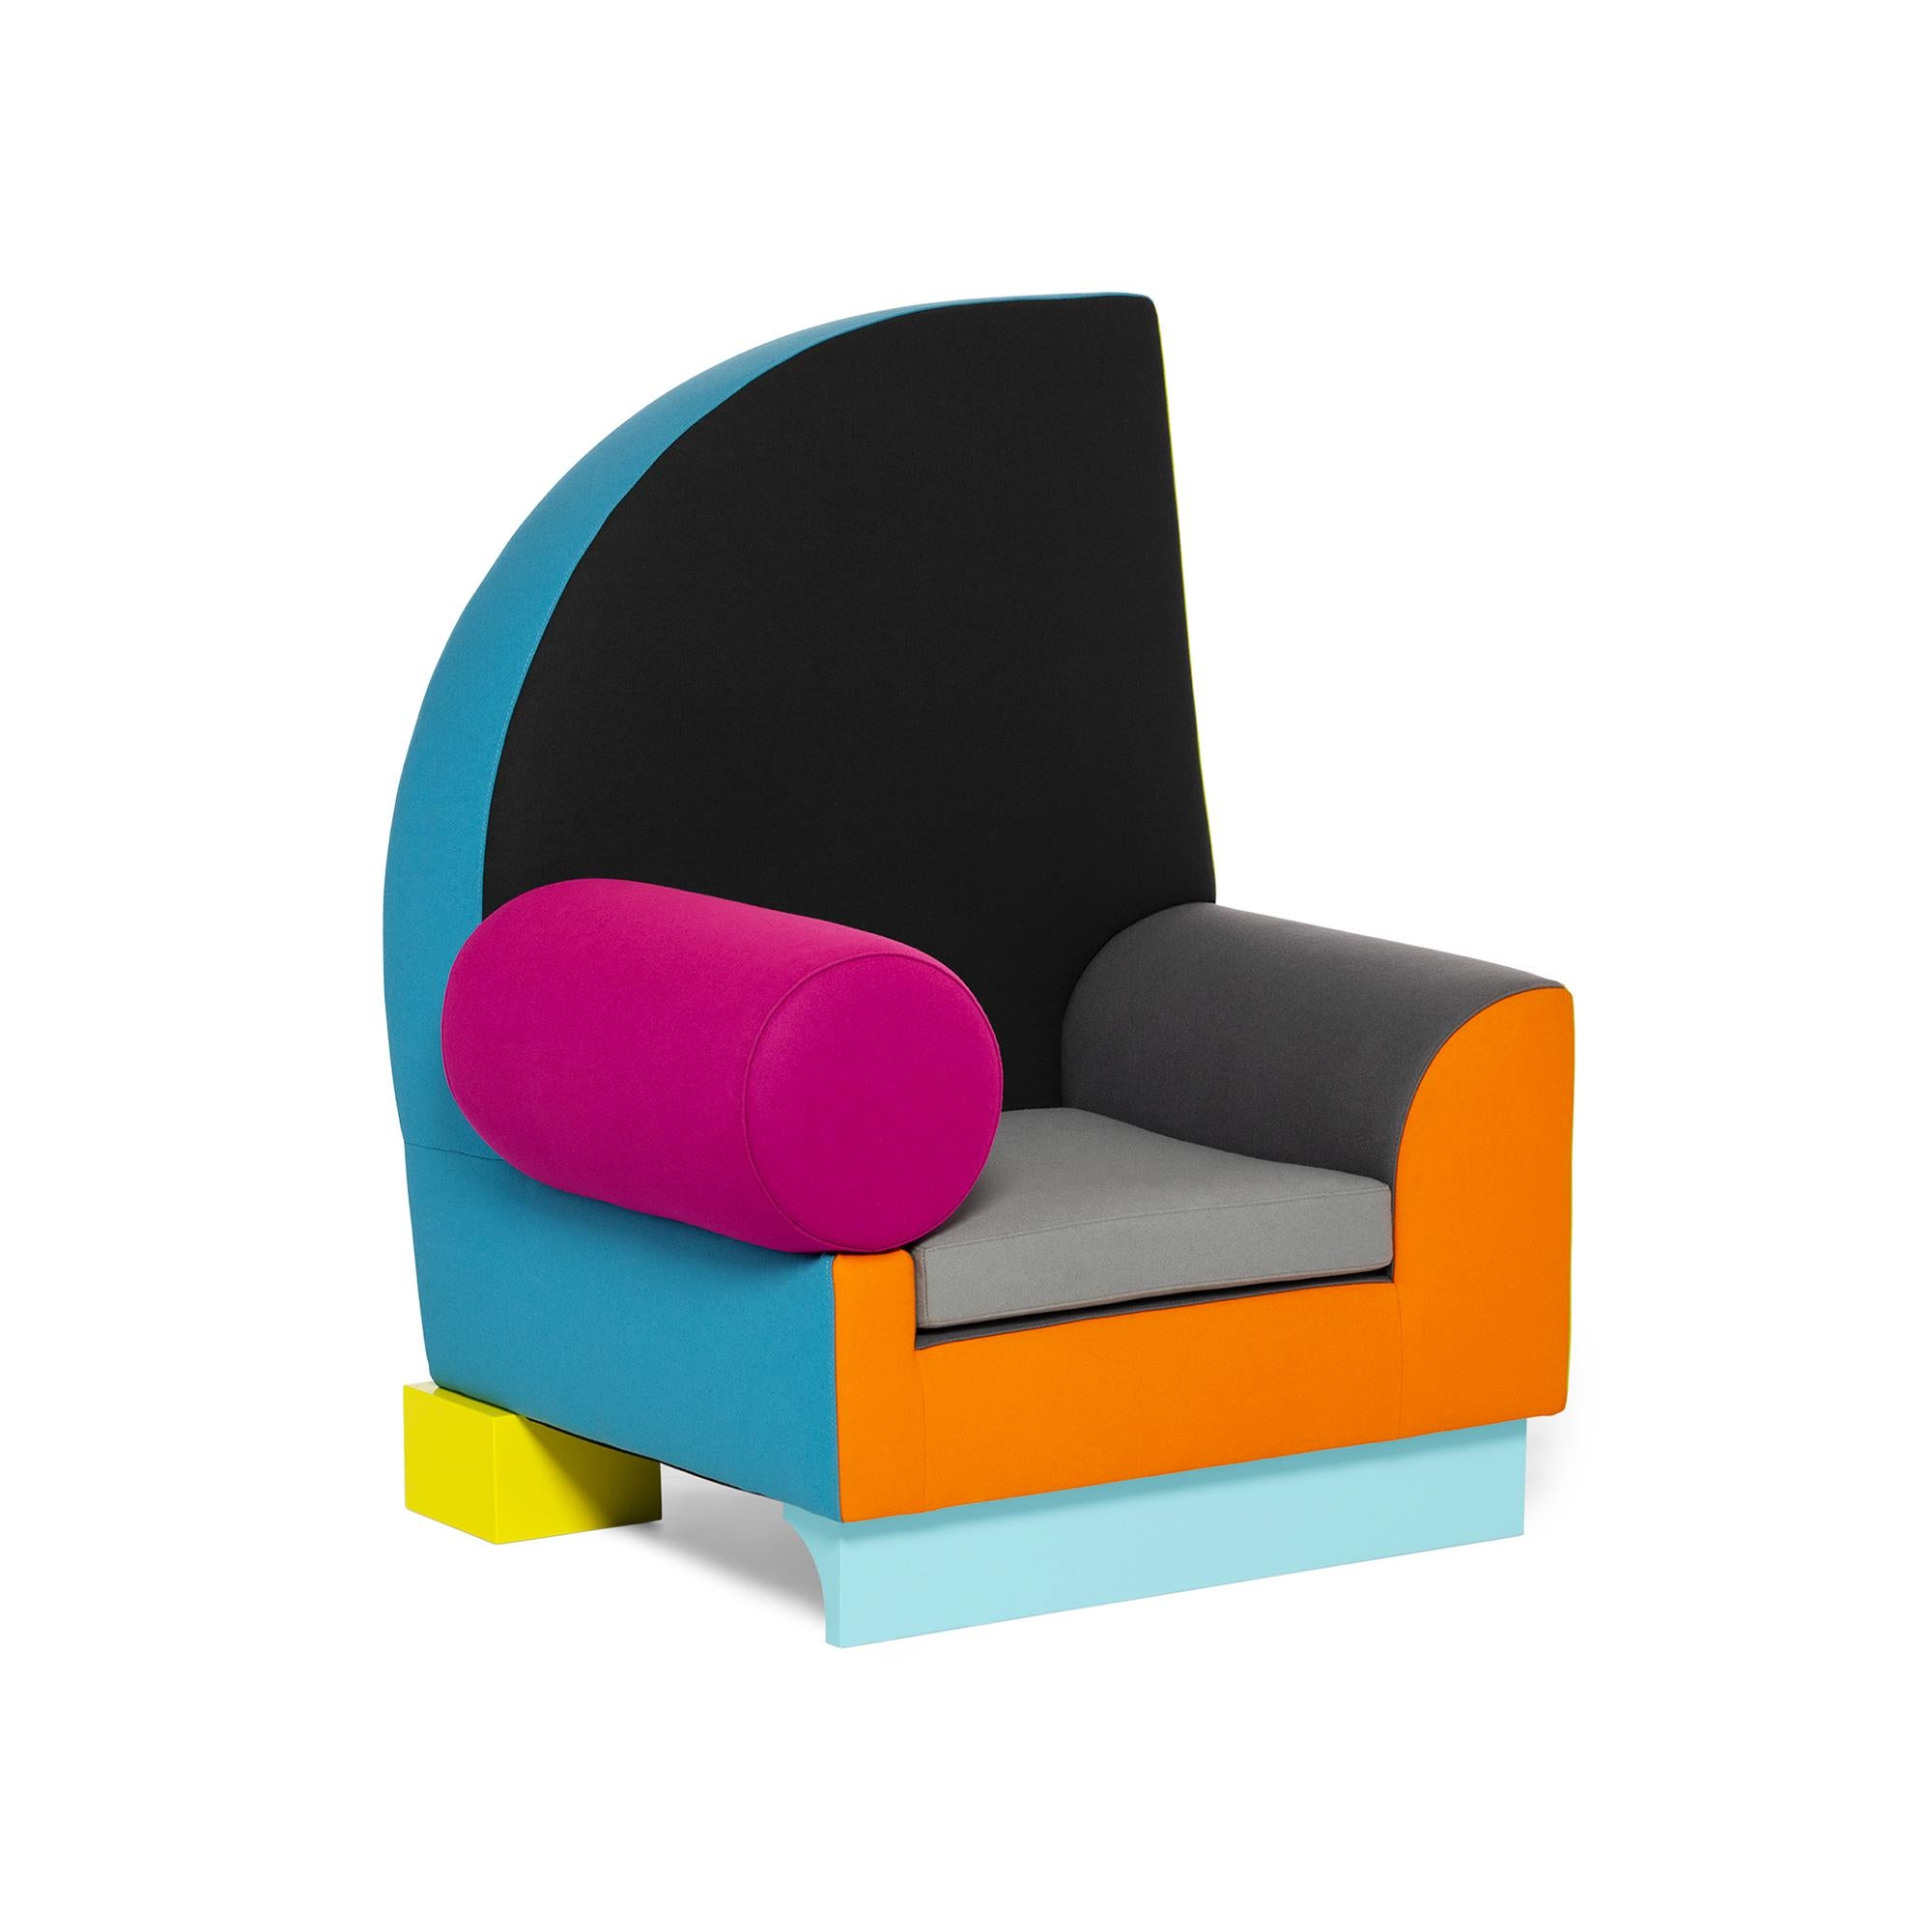 Peter Auenland
1982
Sessel aus Holz, Wollstoffe.
Der Bel Air Stuhl ist eine Hommage an die amerikanische Westküste und die Surfkultur. Der asymmetrische Rücken ist an Haifischflossen angelehnt, während der Name Bel Air